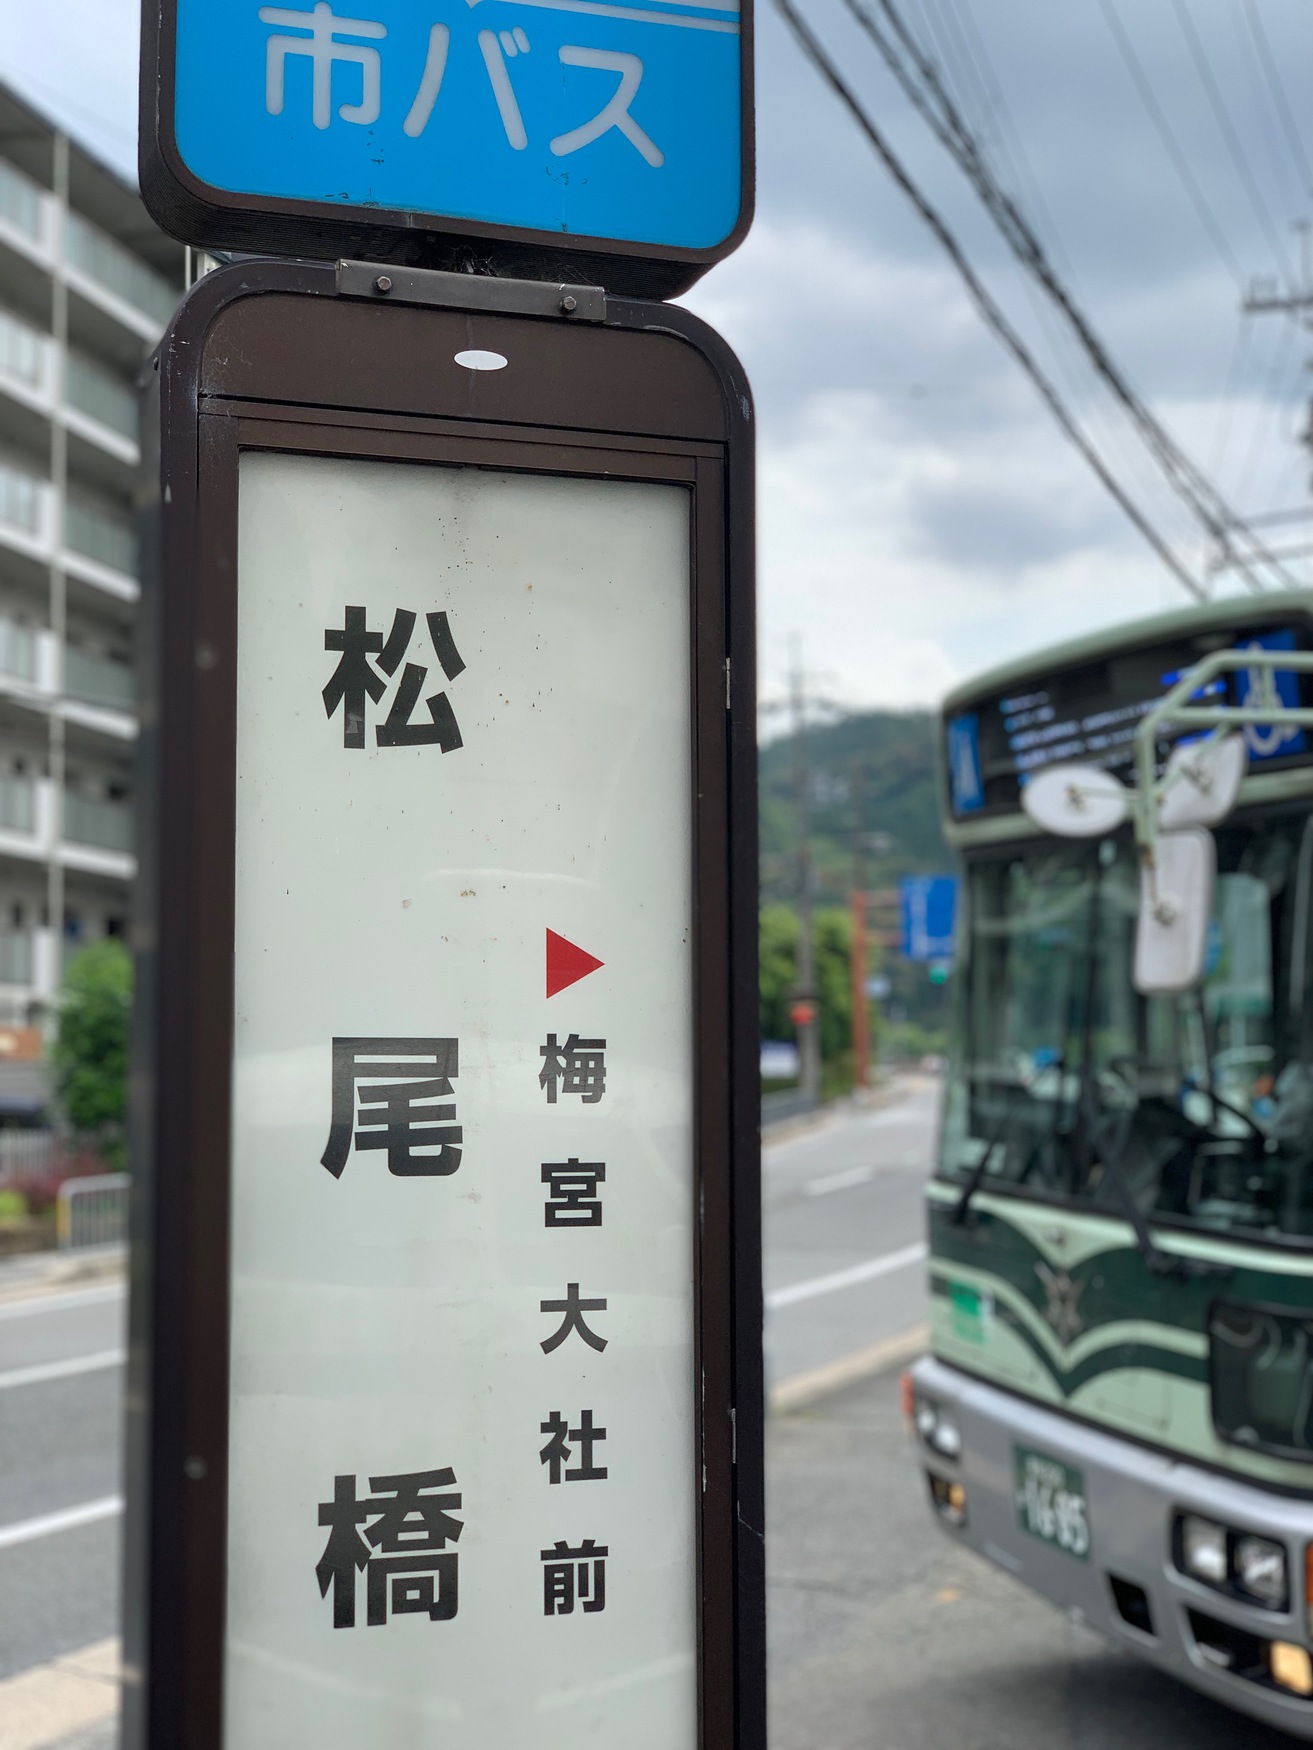 【最寄バス停】京都市バス「松尾橋」：徒歩約1分